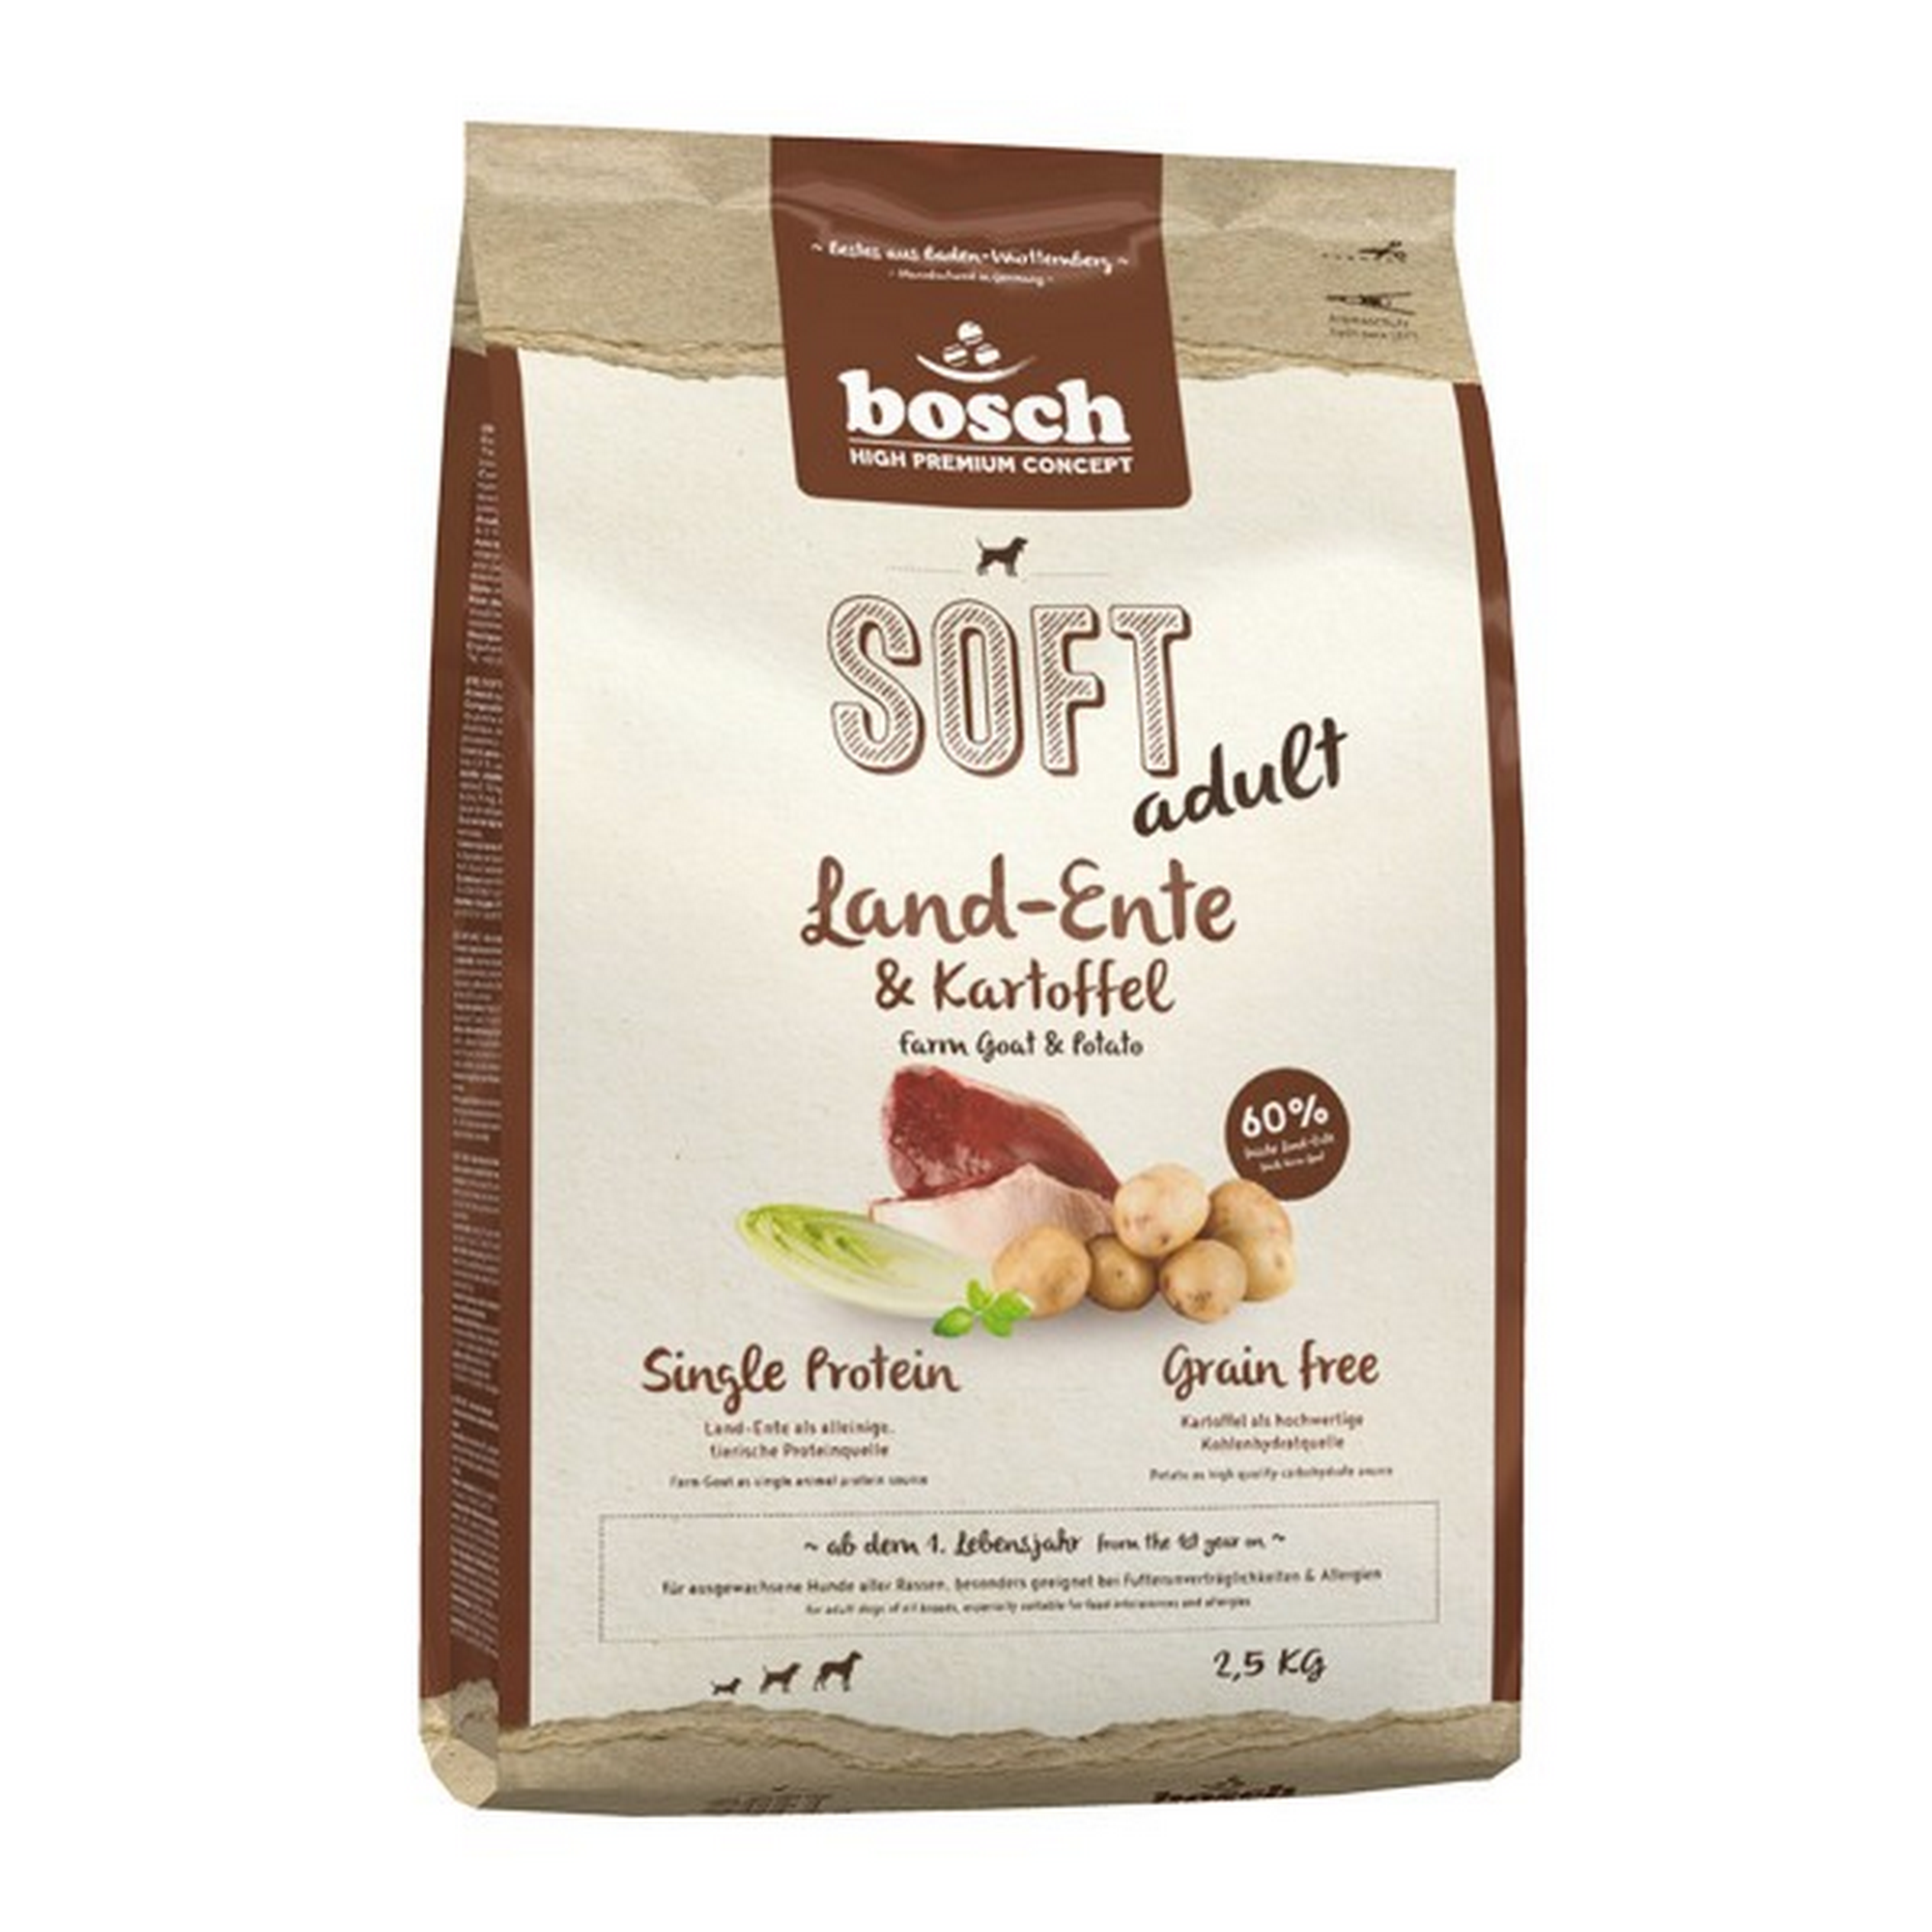 Hundetrockenfutter 'Soft Adult' Land-Ente und Kartoffel 2,5 kg + product picture